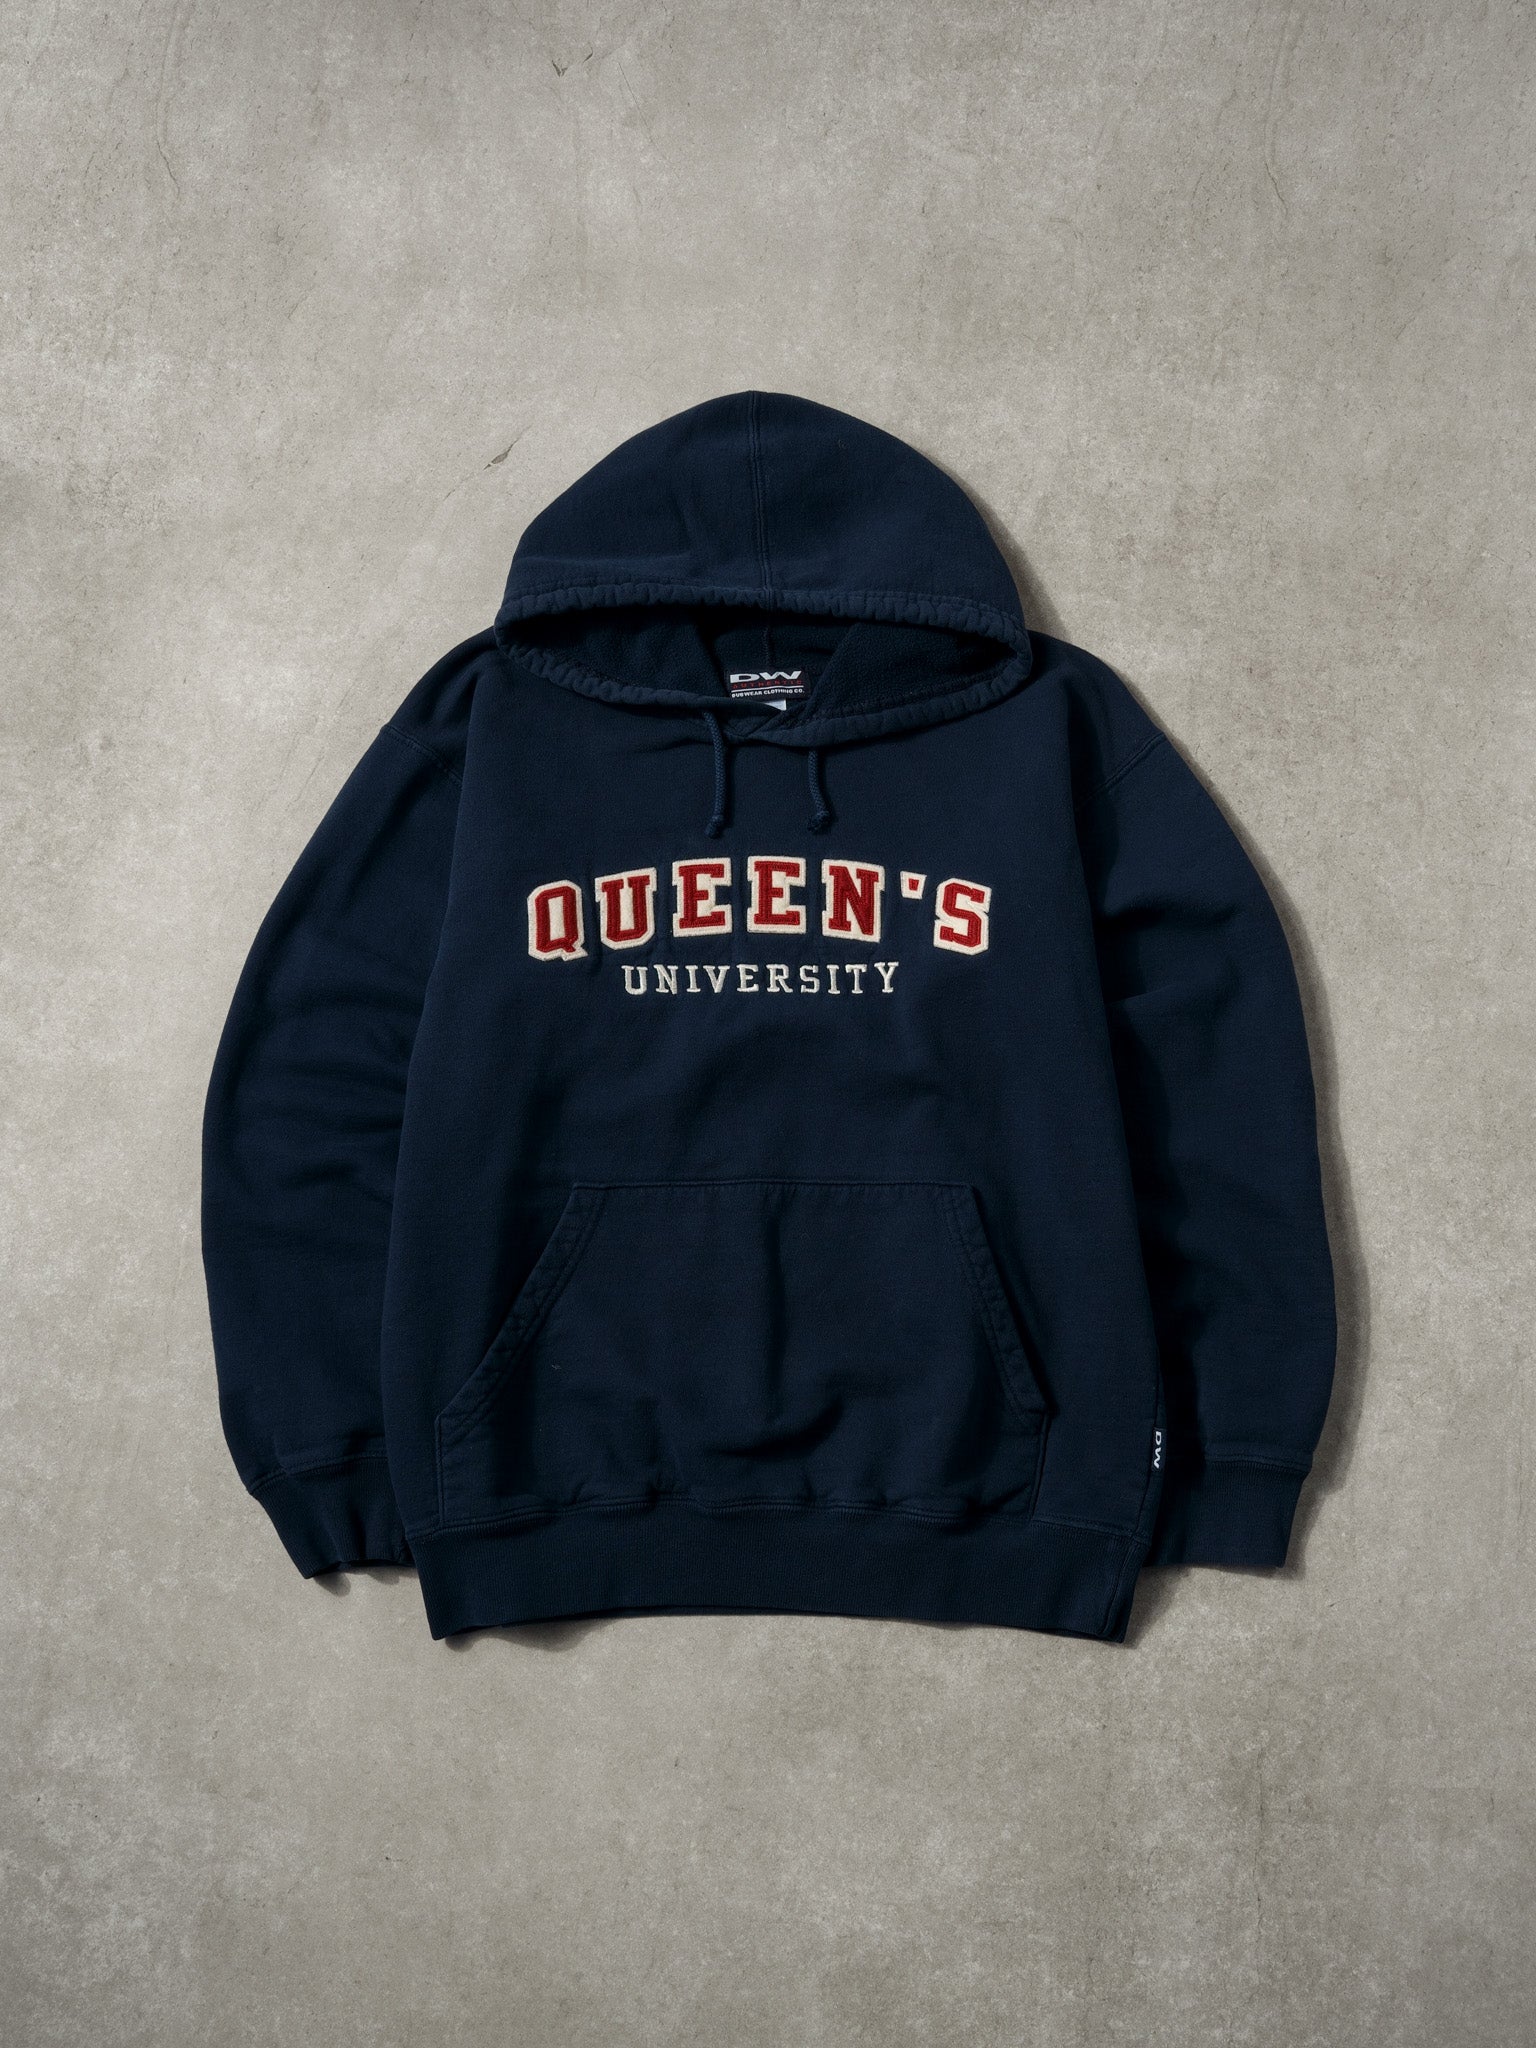 Vintage Navy Blue Queens University Hoodie (S/M)